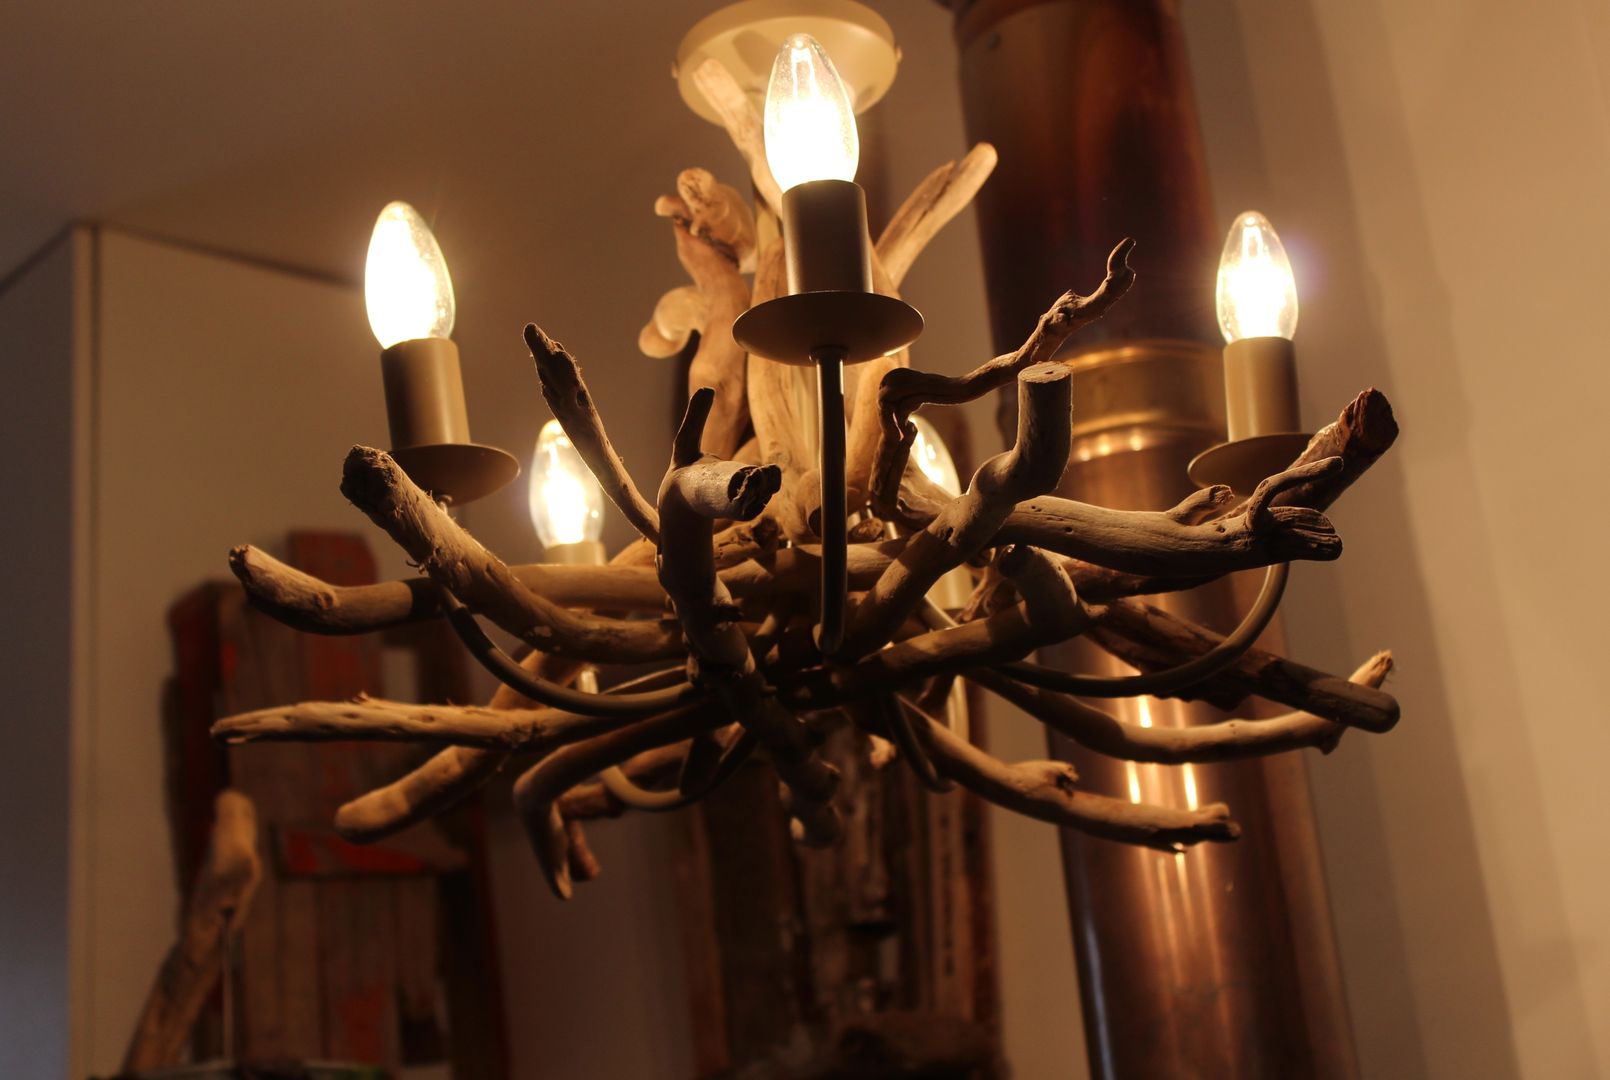 Driftwood chandeliers homify منازل ديكورات واكسسوارات